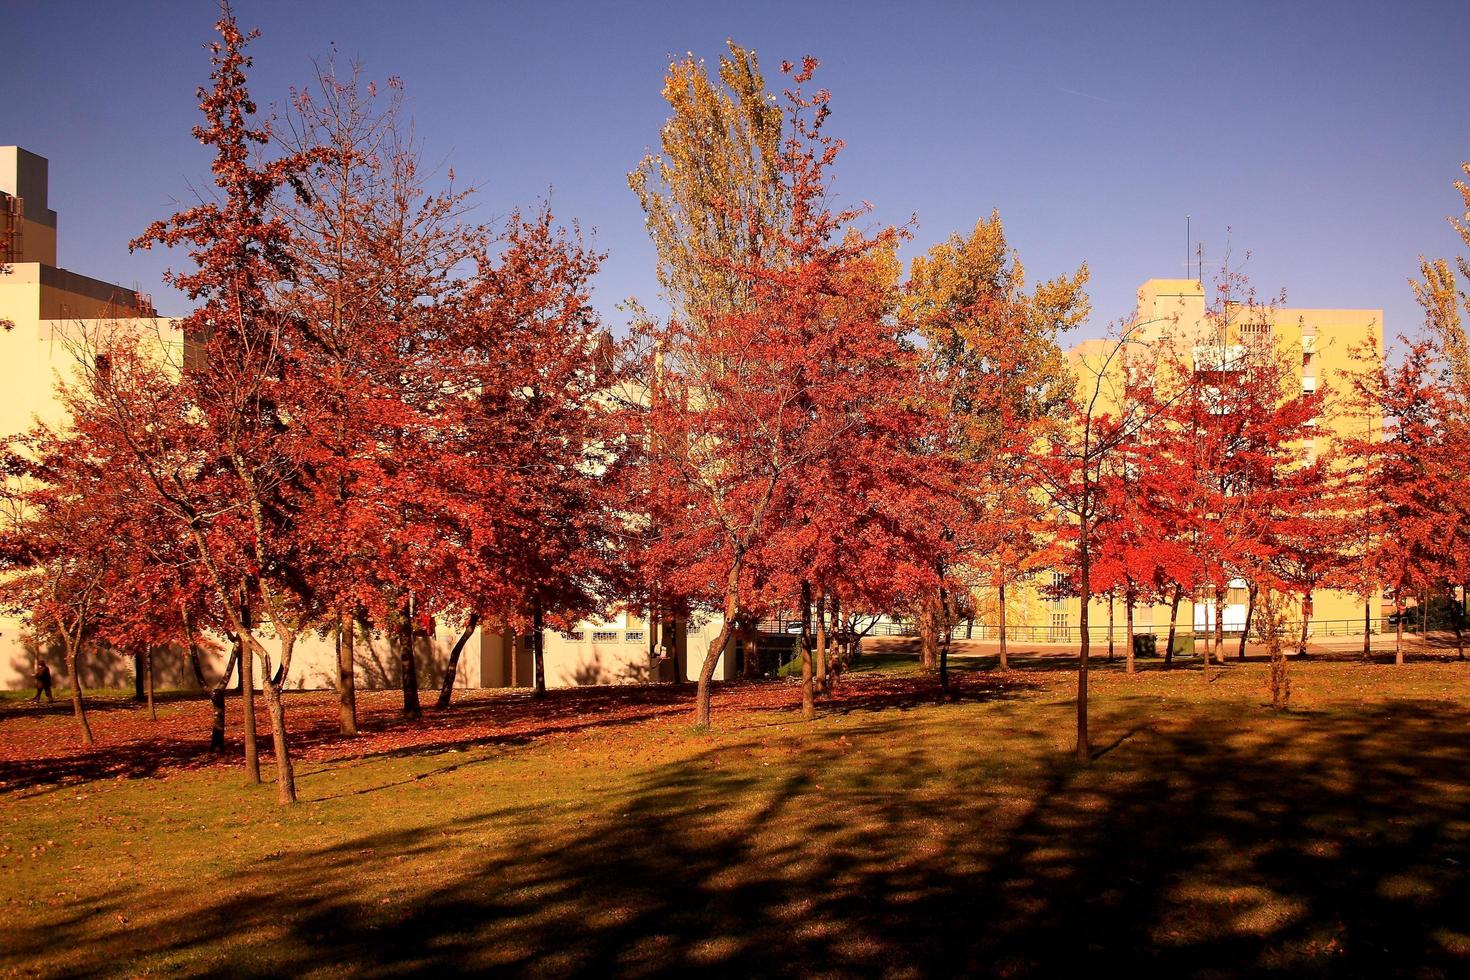 árboles de otoño de la ciudad foto